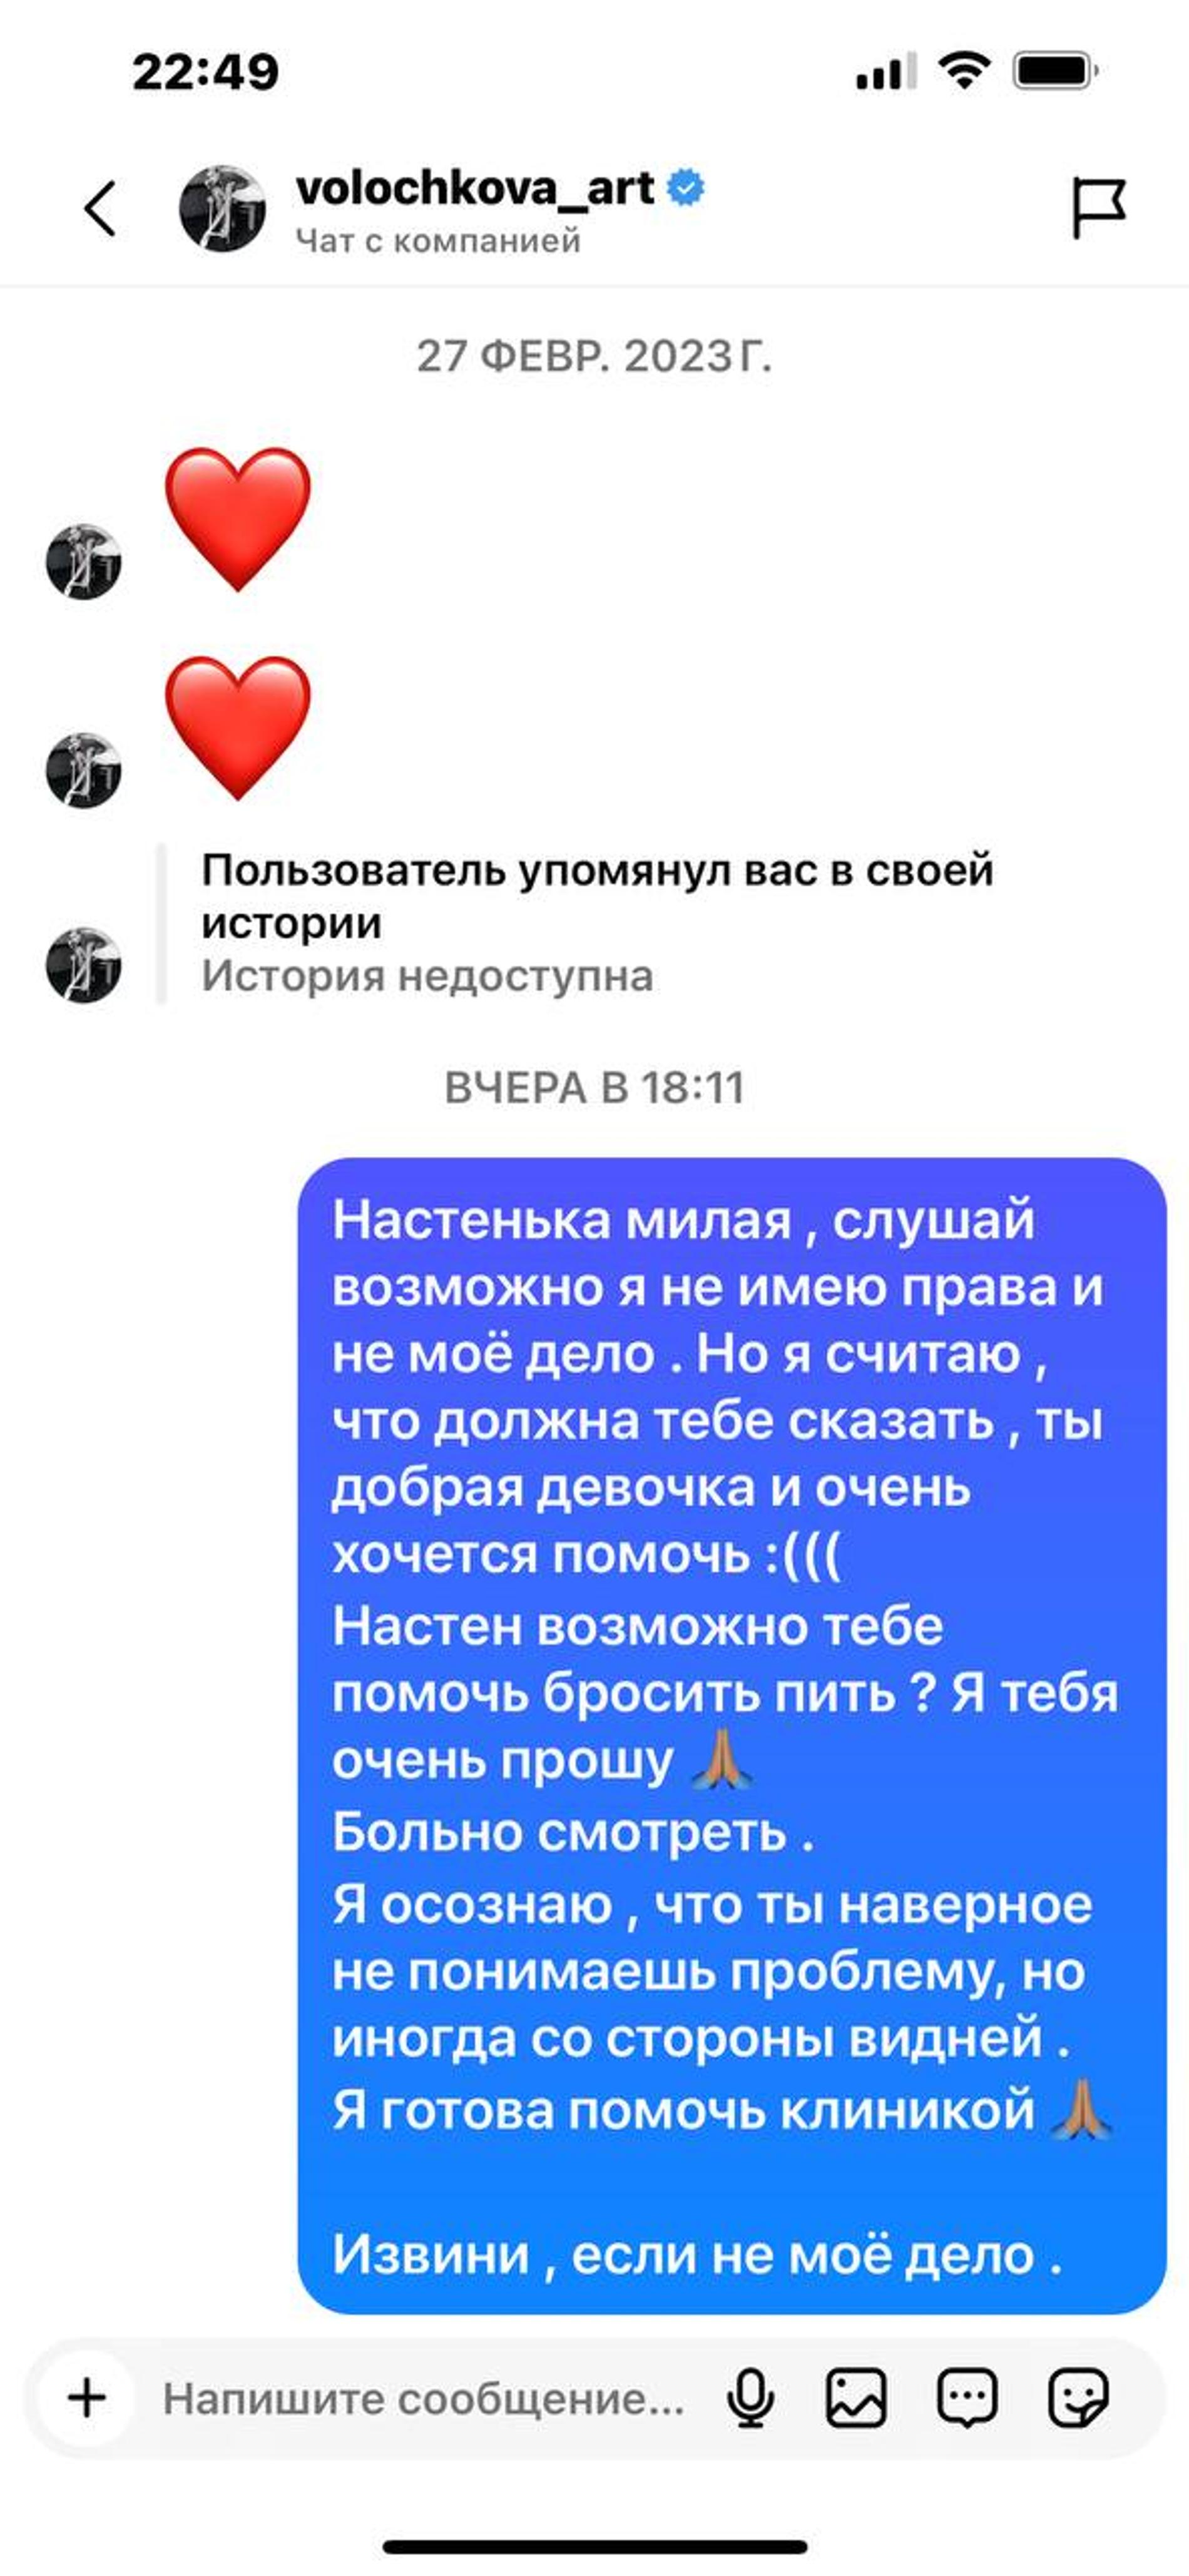 Лера Кудрявцева объяснила, почему публично обратилась к Анастасии Волочковой: «Она счастлива в своем иллюзорном мире»